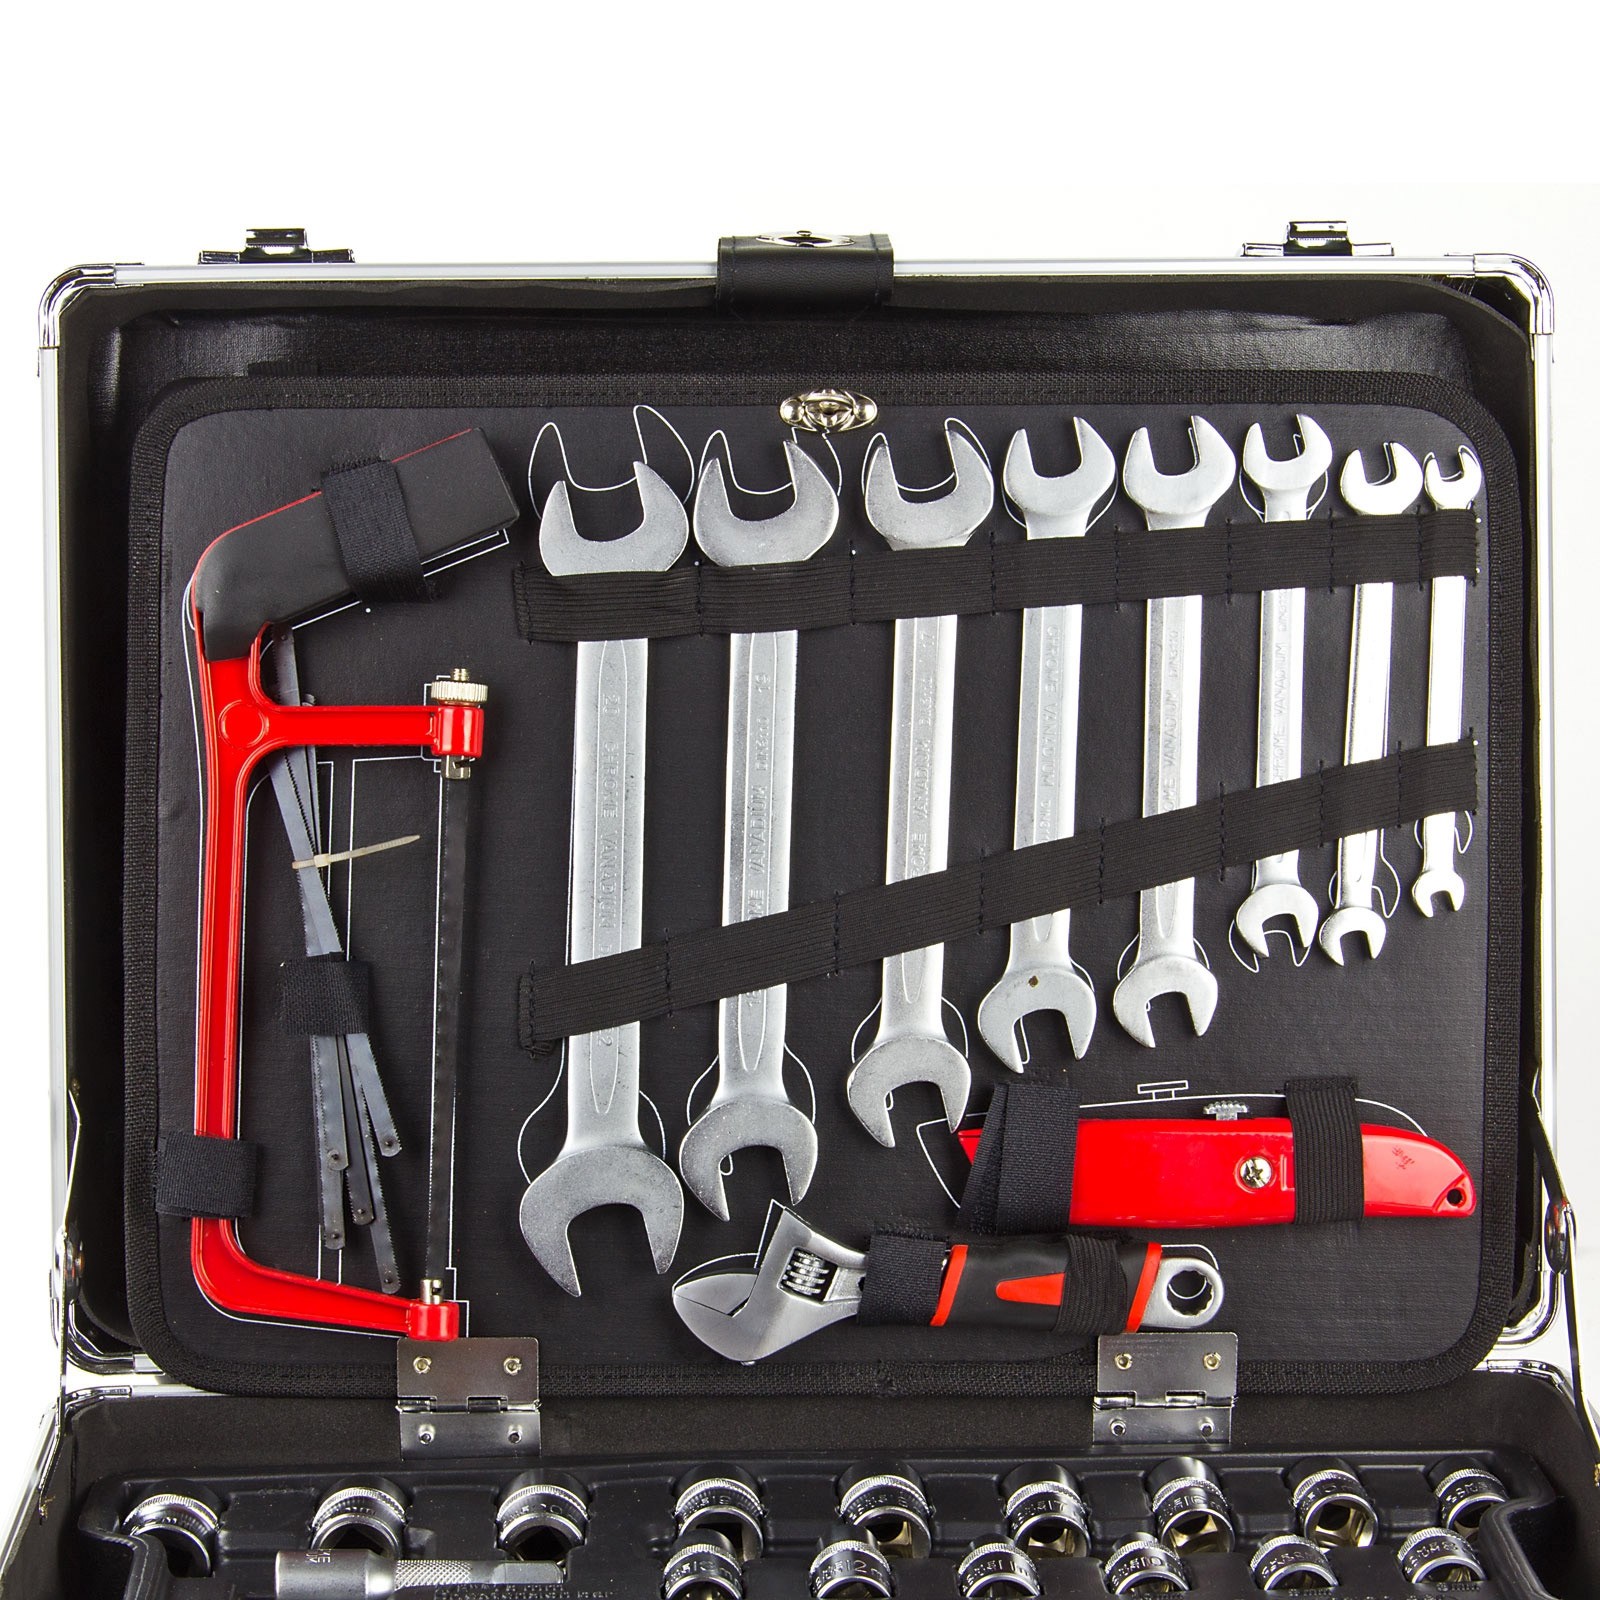 Profi Alu Werkzeugkoffer mit Werkzeug-Set 109 tlg Werkzeugkasten  Werkzeugsset bestückt | STABILO ...mehr als nur Baumarkt!